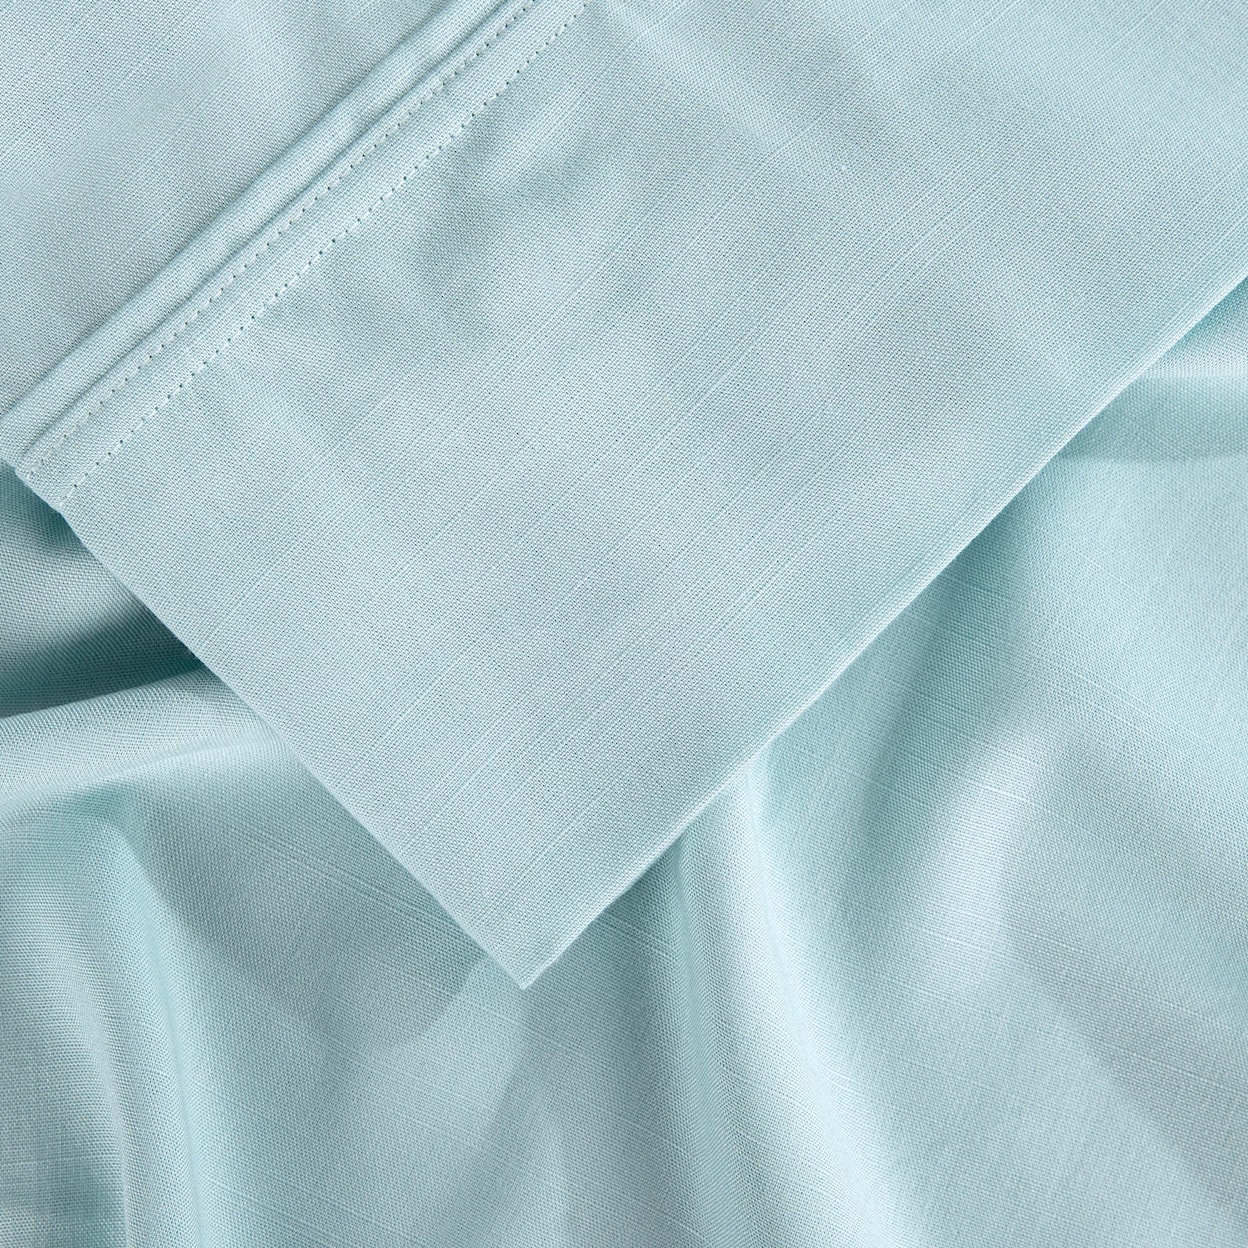 Bedgear Hyper Linen Sheets Sheet Set, Misty Blue, Queen